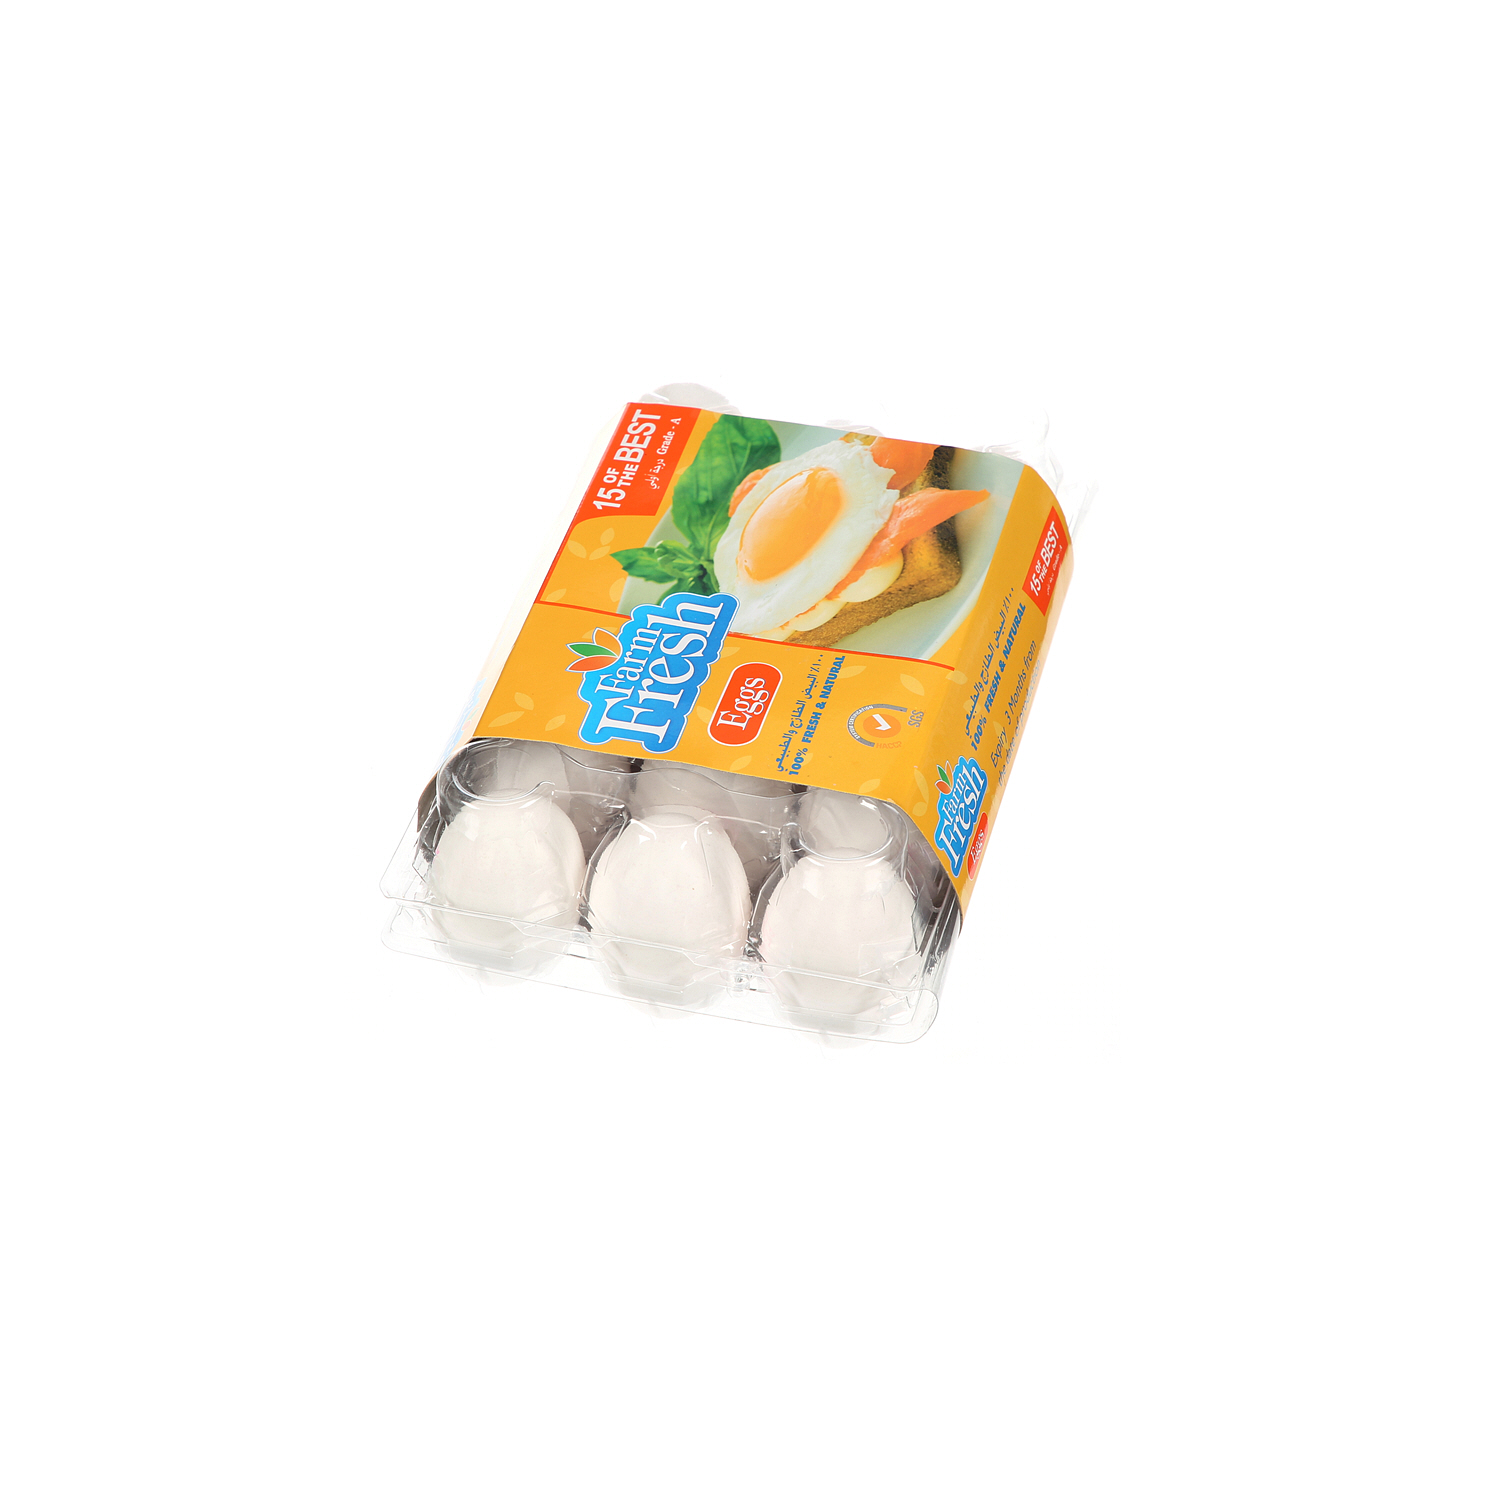 Farm Fresh White Eggs 15 Pack